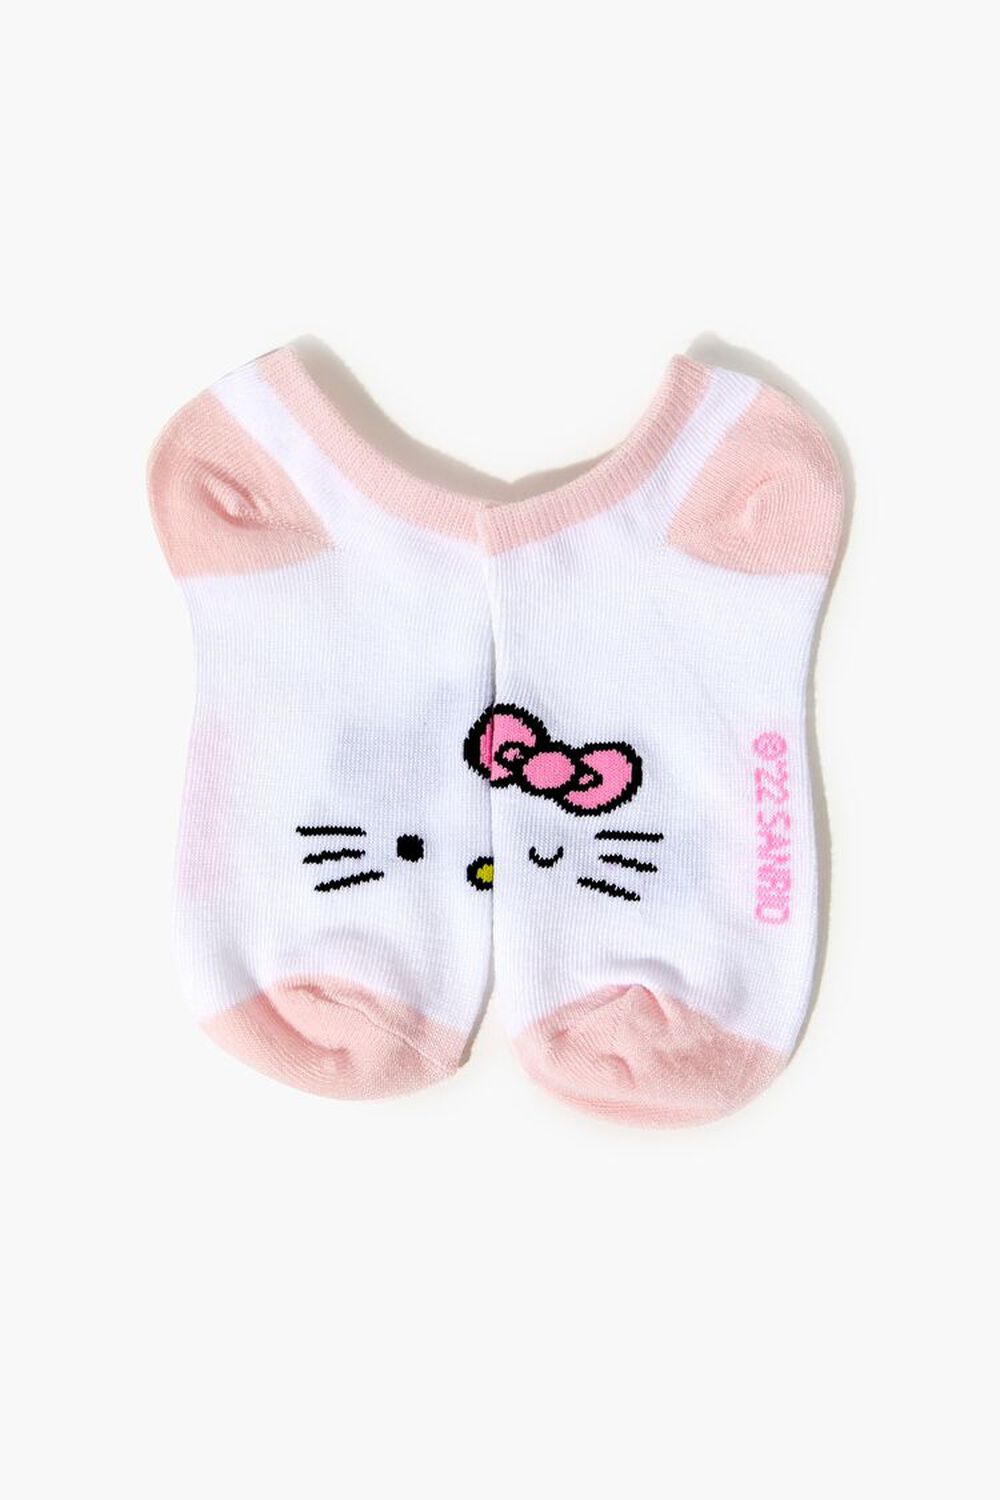 forever21.com | Girls Hello Kitty Ankle Socks (Kids)